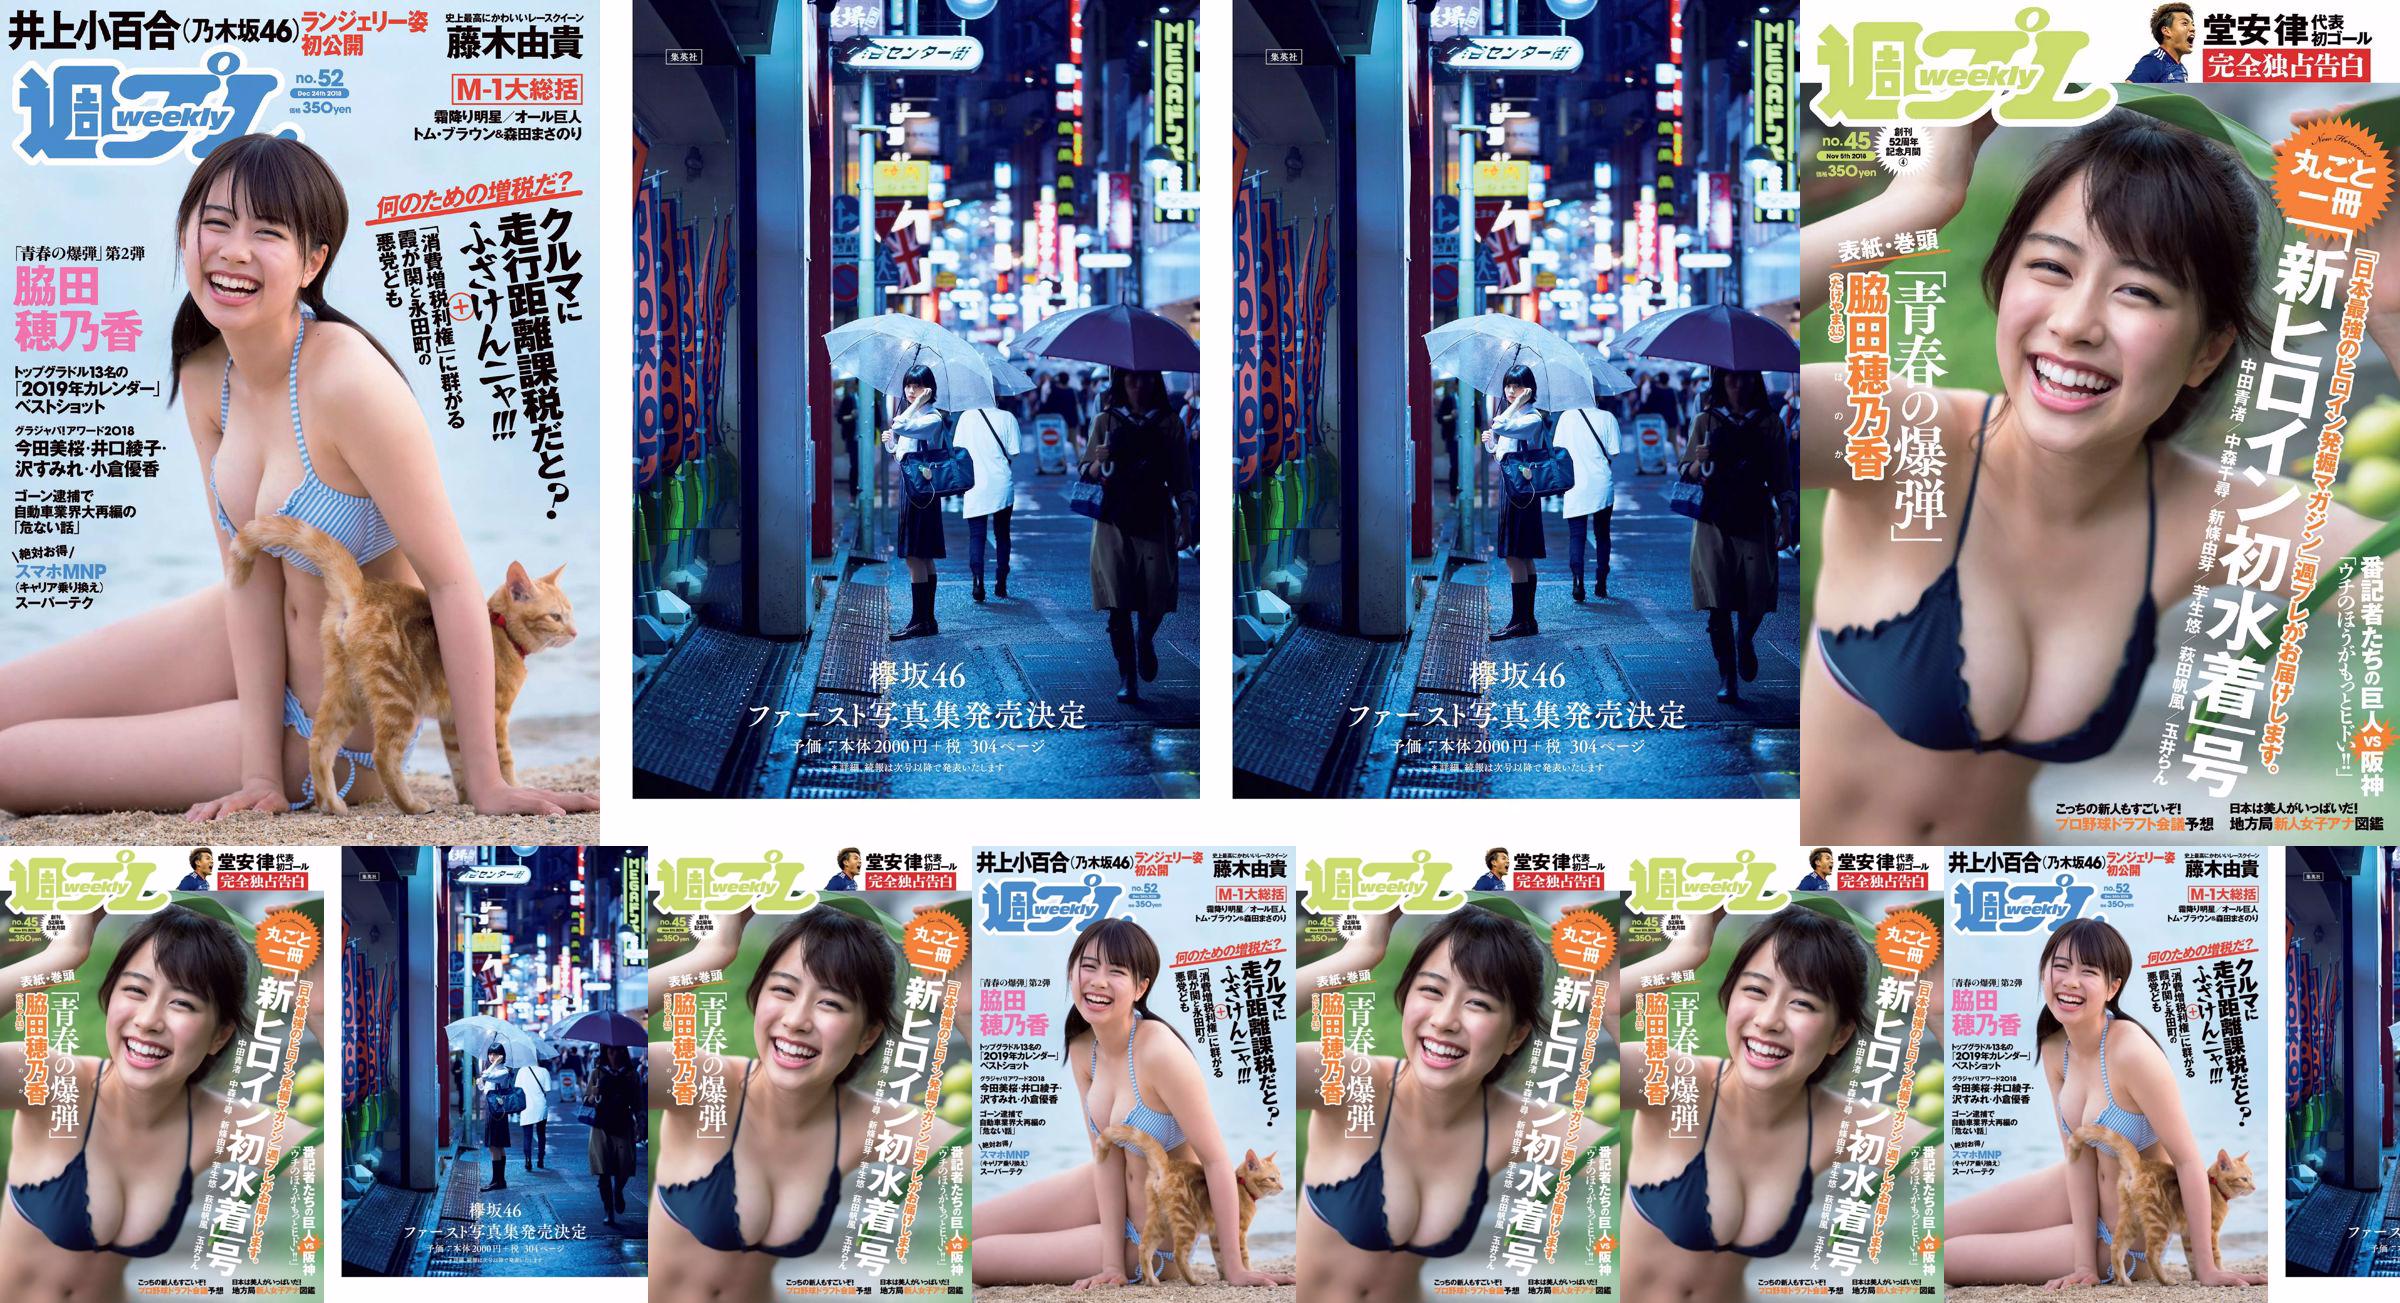 Wakada Honoka, Inoue Sayuri, Mizusawa Yuno, Fujiki Yuki, Koizumi Haruka, Kaito みらい, Tachiki Ayano [Weekly Playboy] 2018 No.52 Photo Magazine No.c9fc4c Seite 2